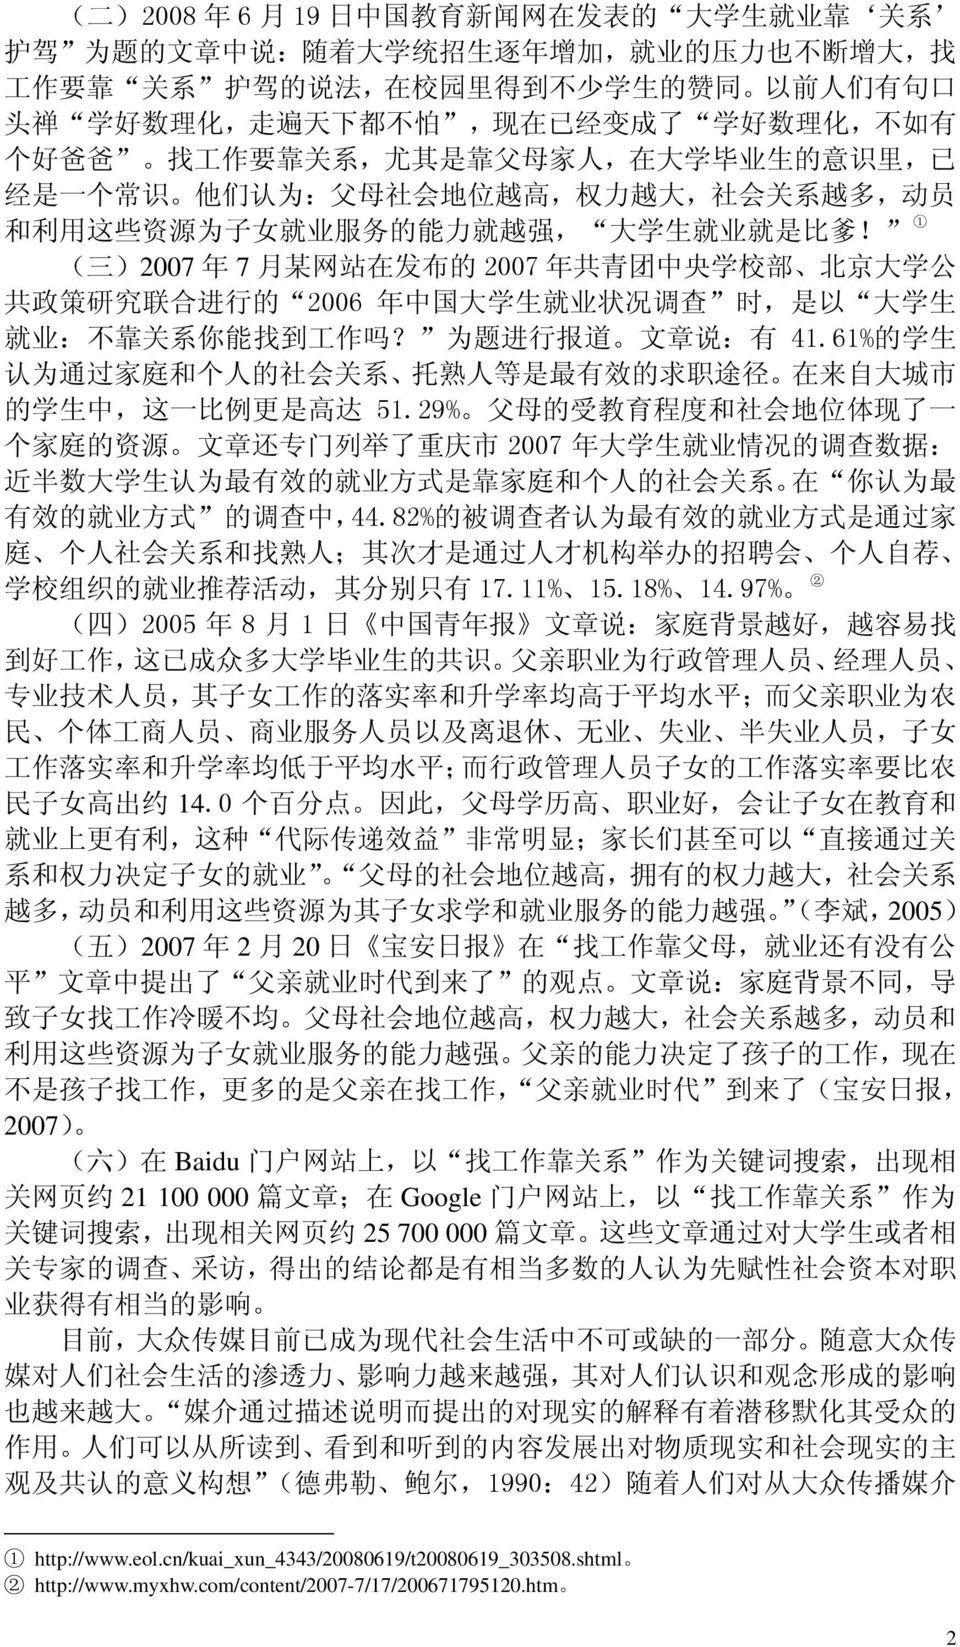 业 服 务 的 能 力 就 越 强, 大 学 生 就 业 就 是 比 爹! 1 ( 三 )2007 年 7 月 某 网 站 在 发 布 的 2007 年 共 青 团 中 央 学 校 部 北 京 大 学 公 共 政 策 研 究 联 合 进 行 的 2006 年 中 国 大 学 生 就 业 状 况 调 查 时, 是 以 大 学 生 就 业 : 不 靠 关 系 你 能 找 到 工 作 吗?